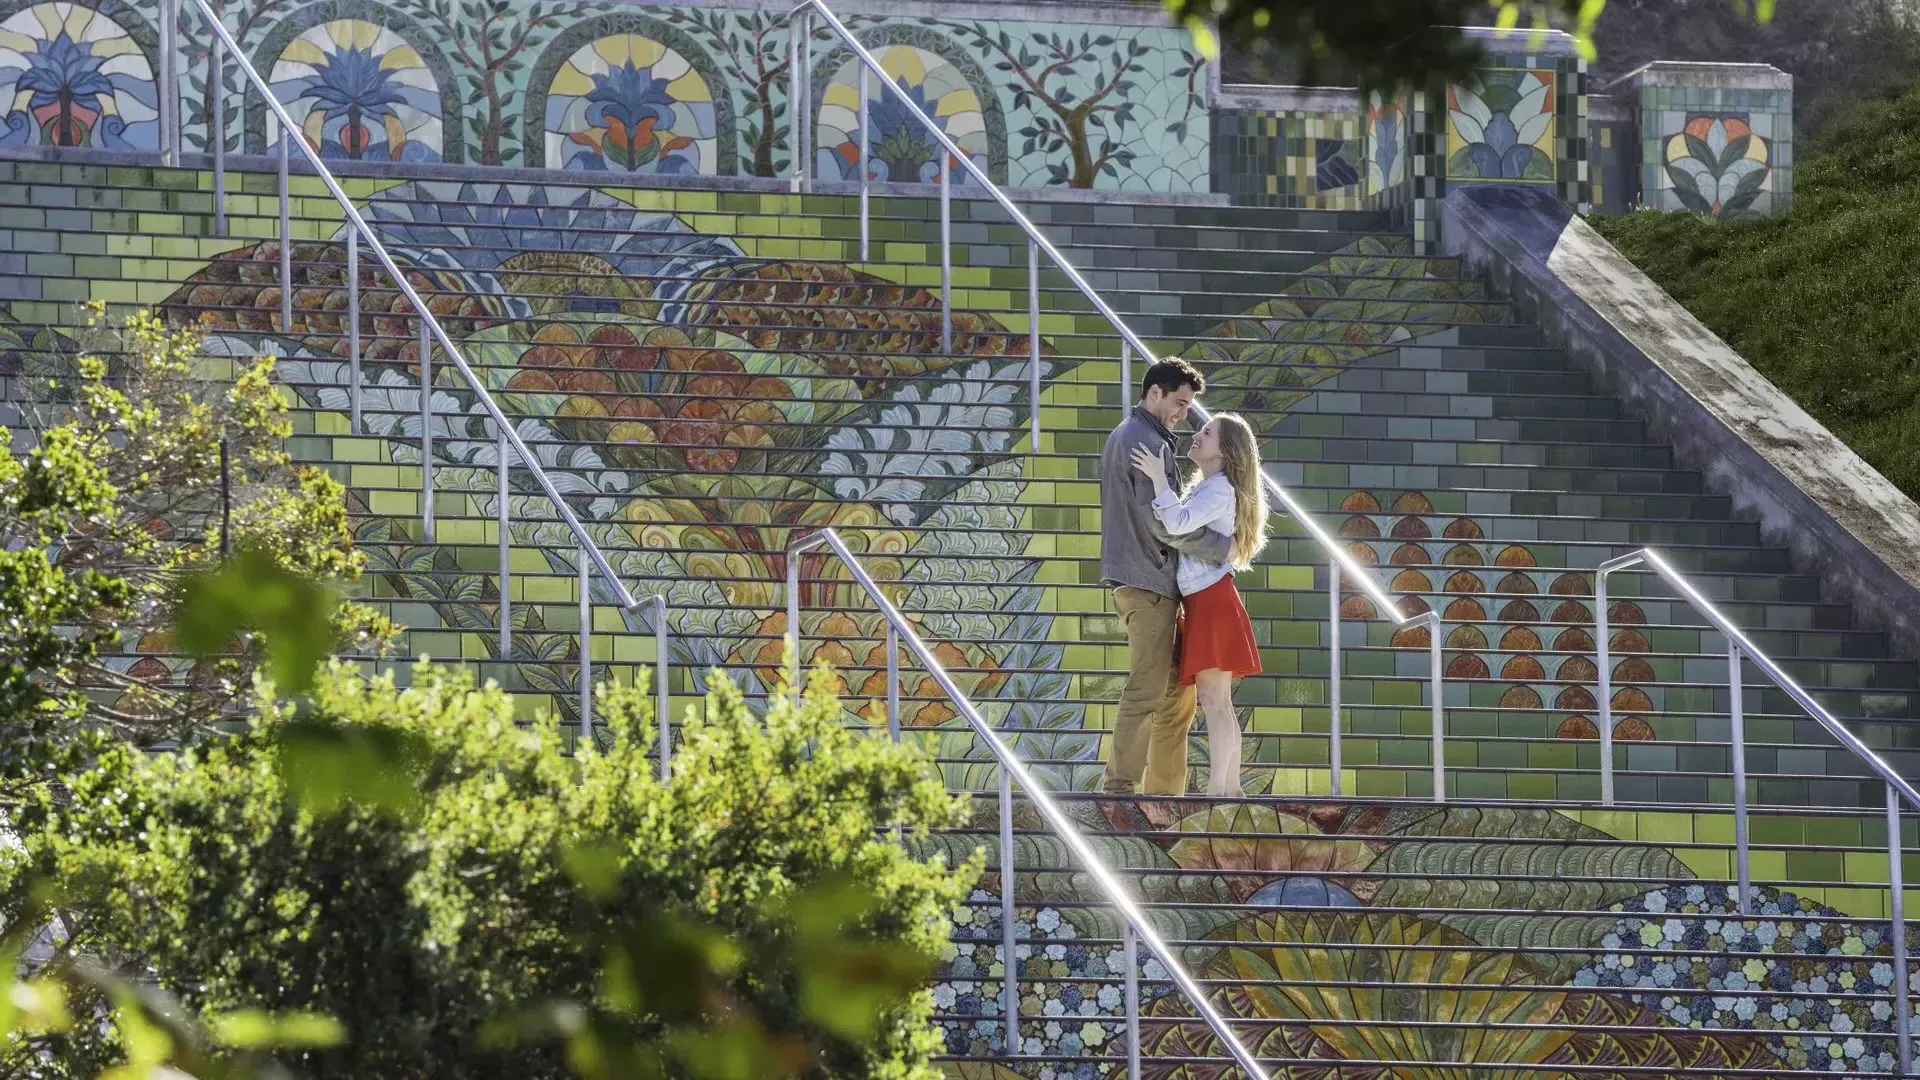 링컨 공원의 화려한 타일 계단에 서 있는 커플의 각도에서 찍은 사진